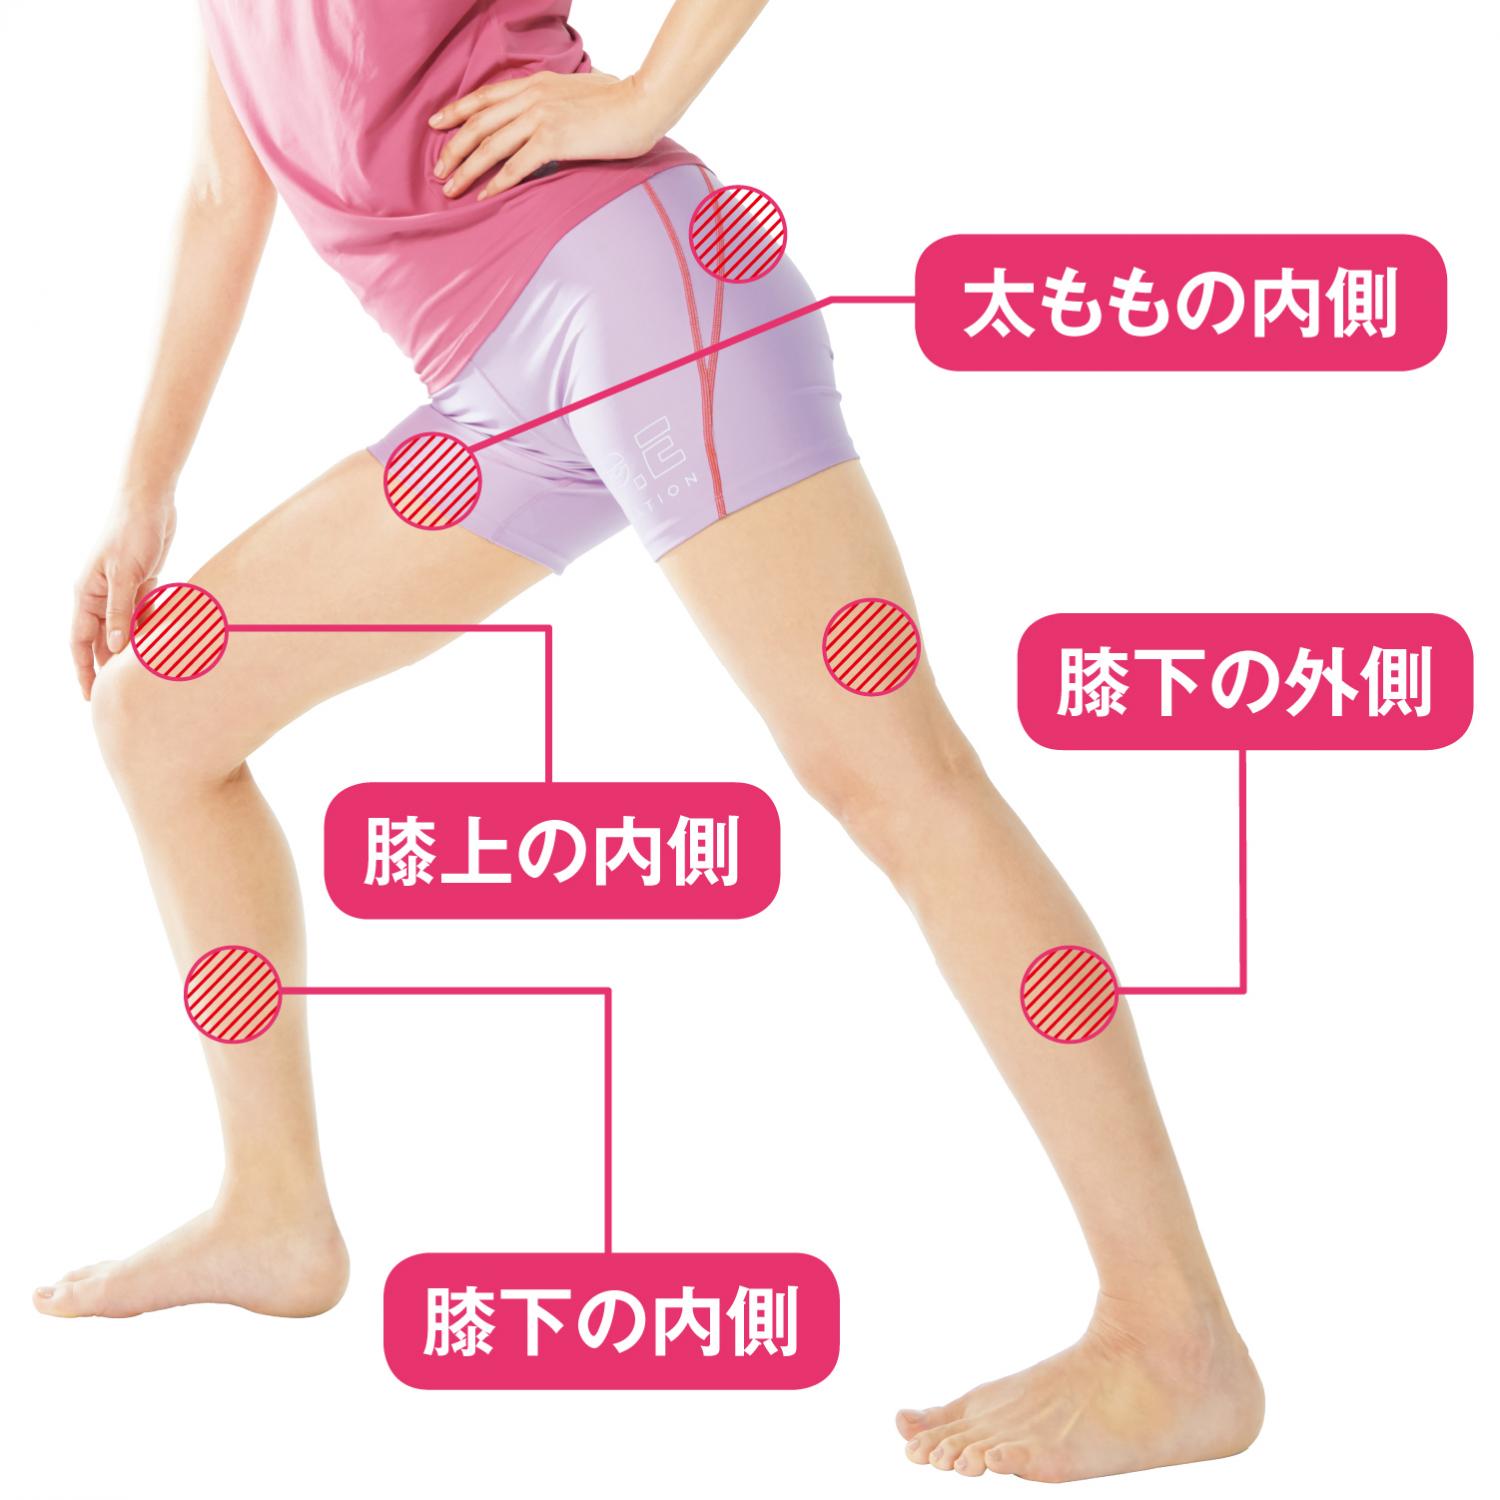 筋膜ほぐしのターゲットは４つ　膝下の外側　太ももの内側　膝上の内側　膝下の内側